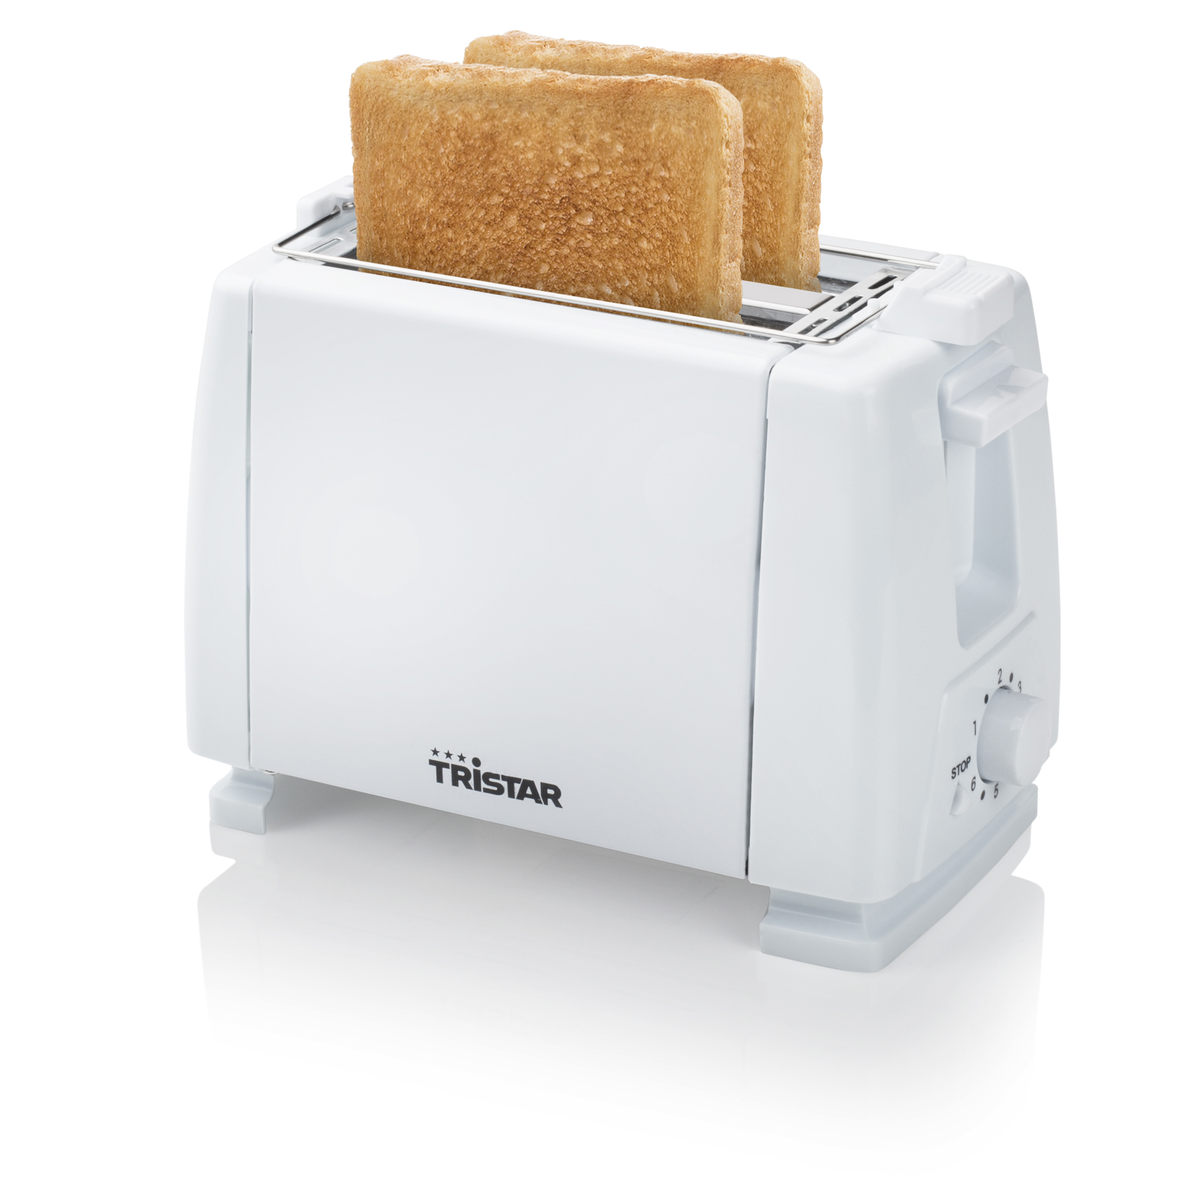 (650 Schlitze: 2) Weiß TRISTAR BR-1009 Toaster Watt,